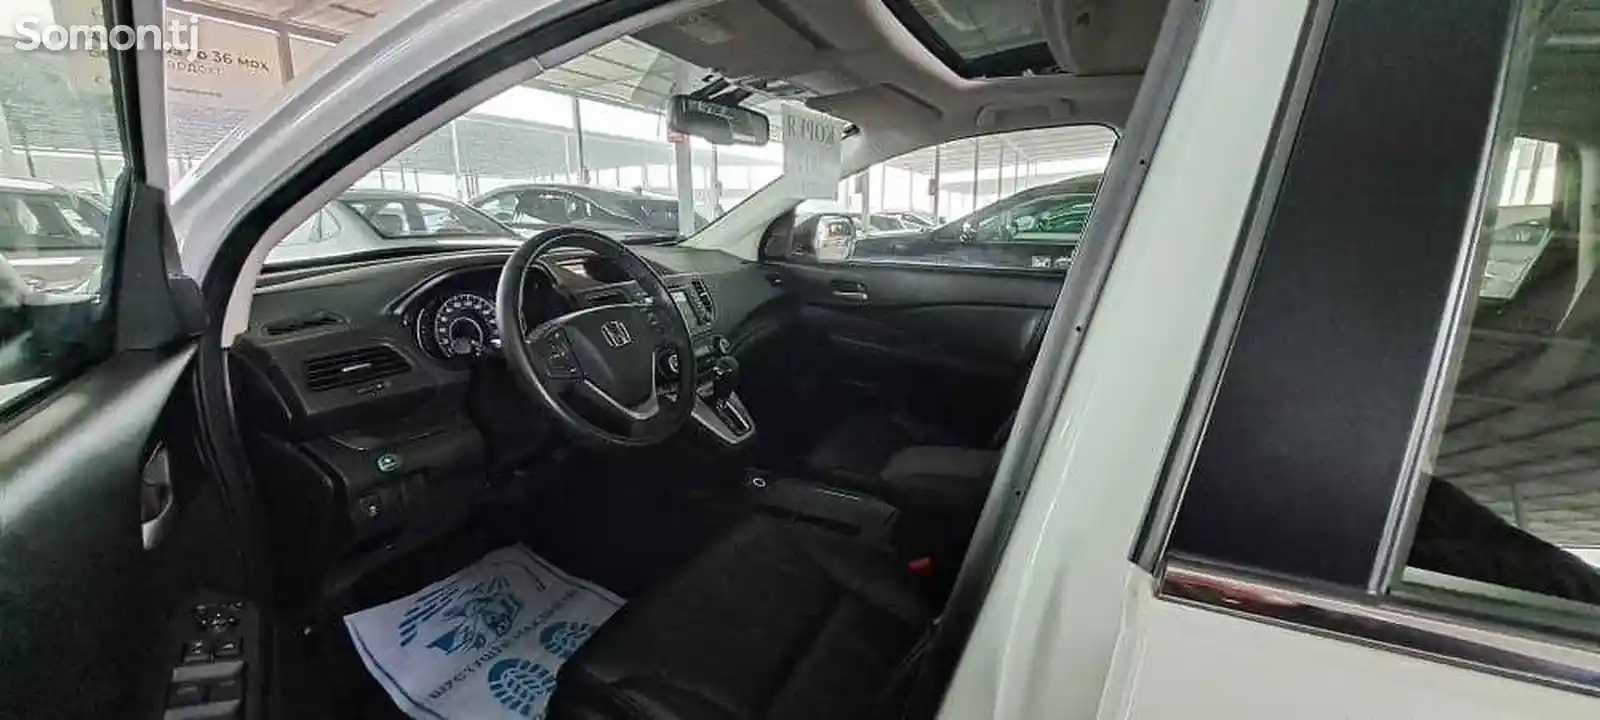 Honda CR-V, 2012-8